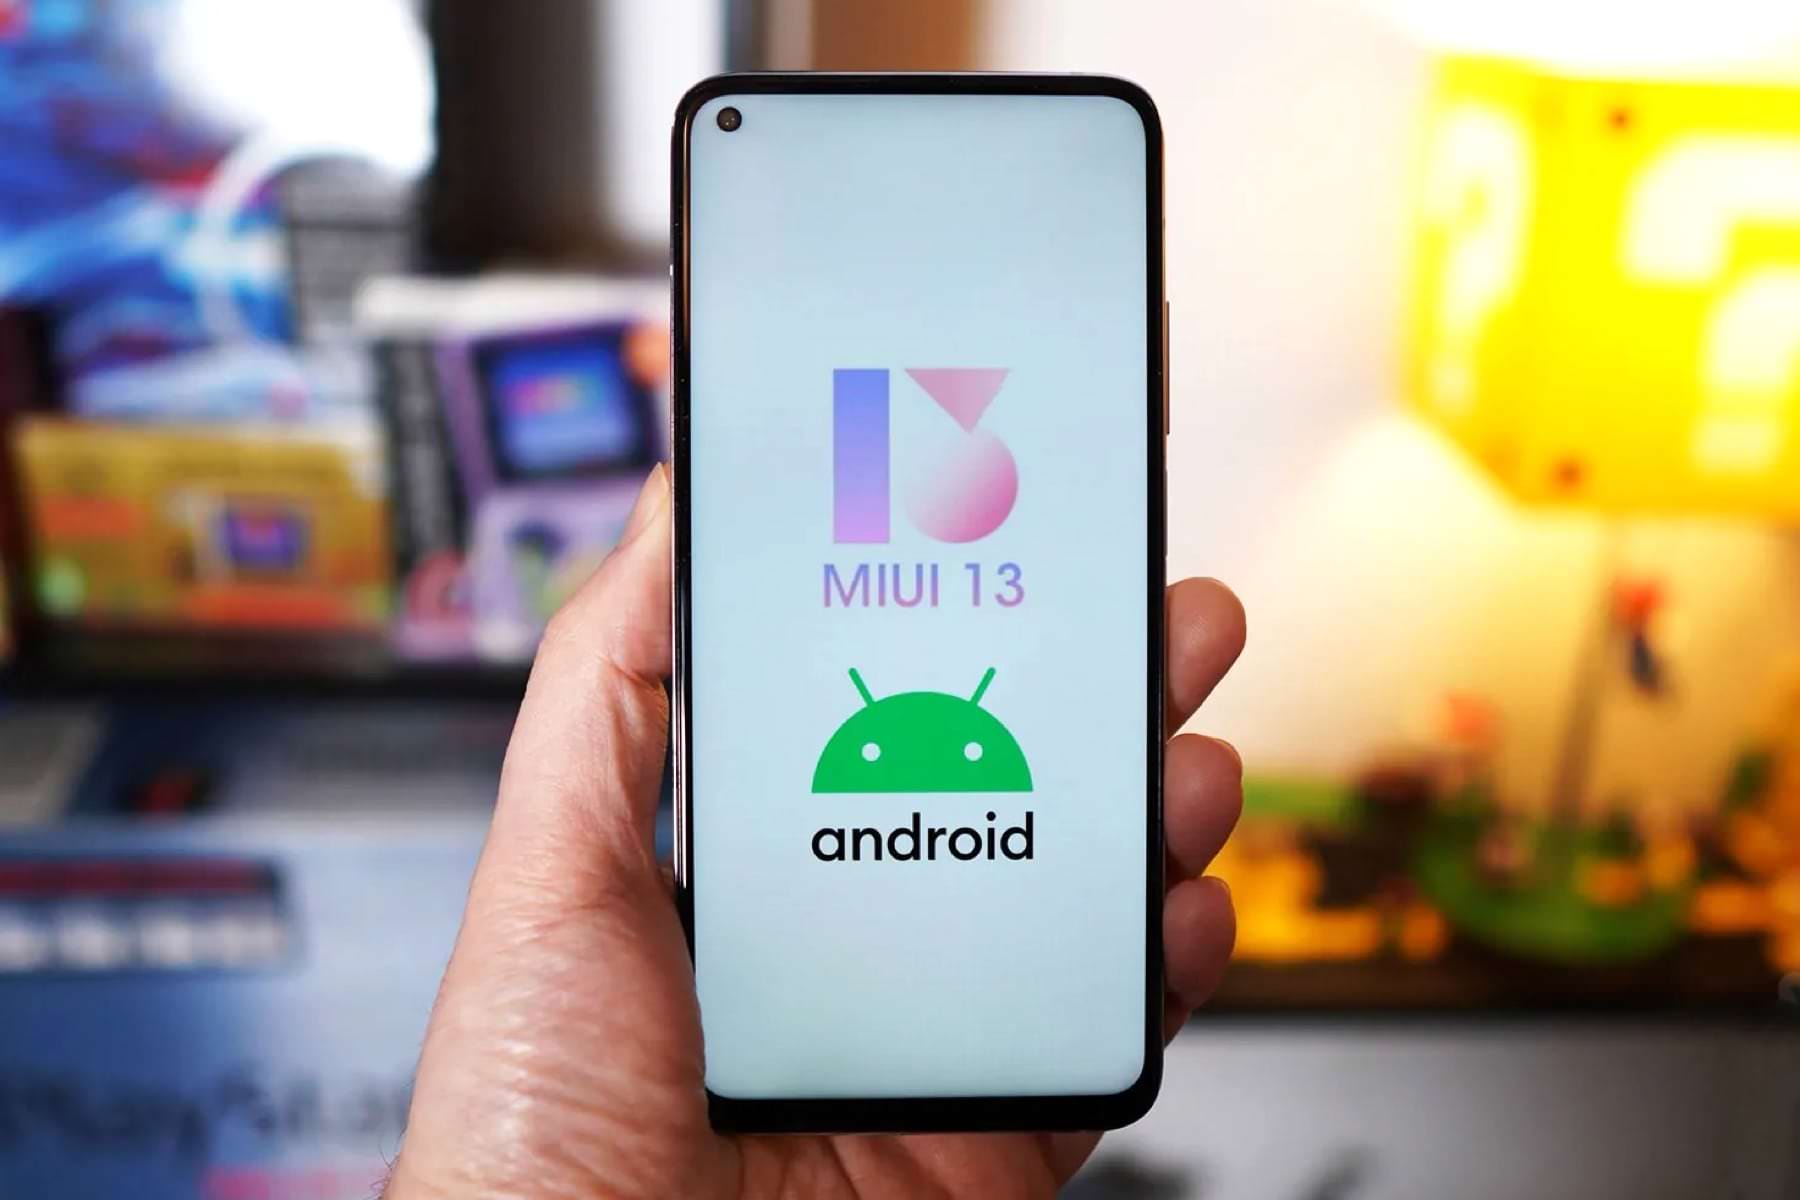 102 smartfony Xiaomi otrzymają system operacyjny Android 12 z MIUI 13 - opublikowano zaktualizowaną listę